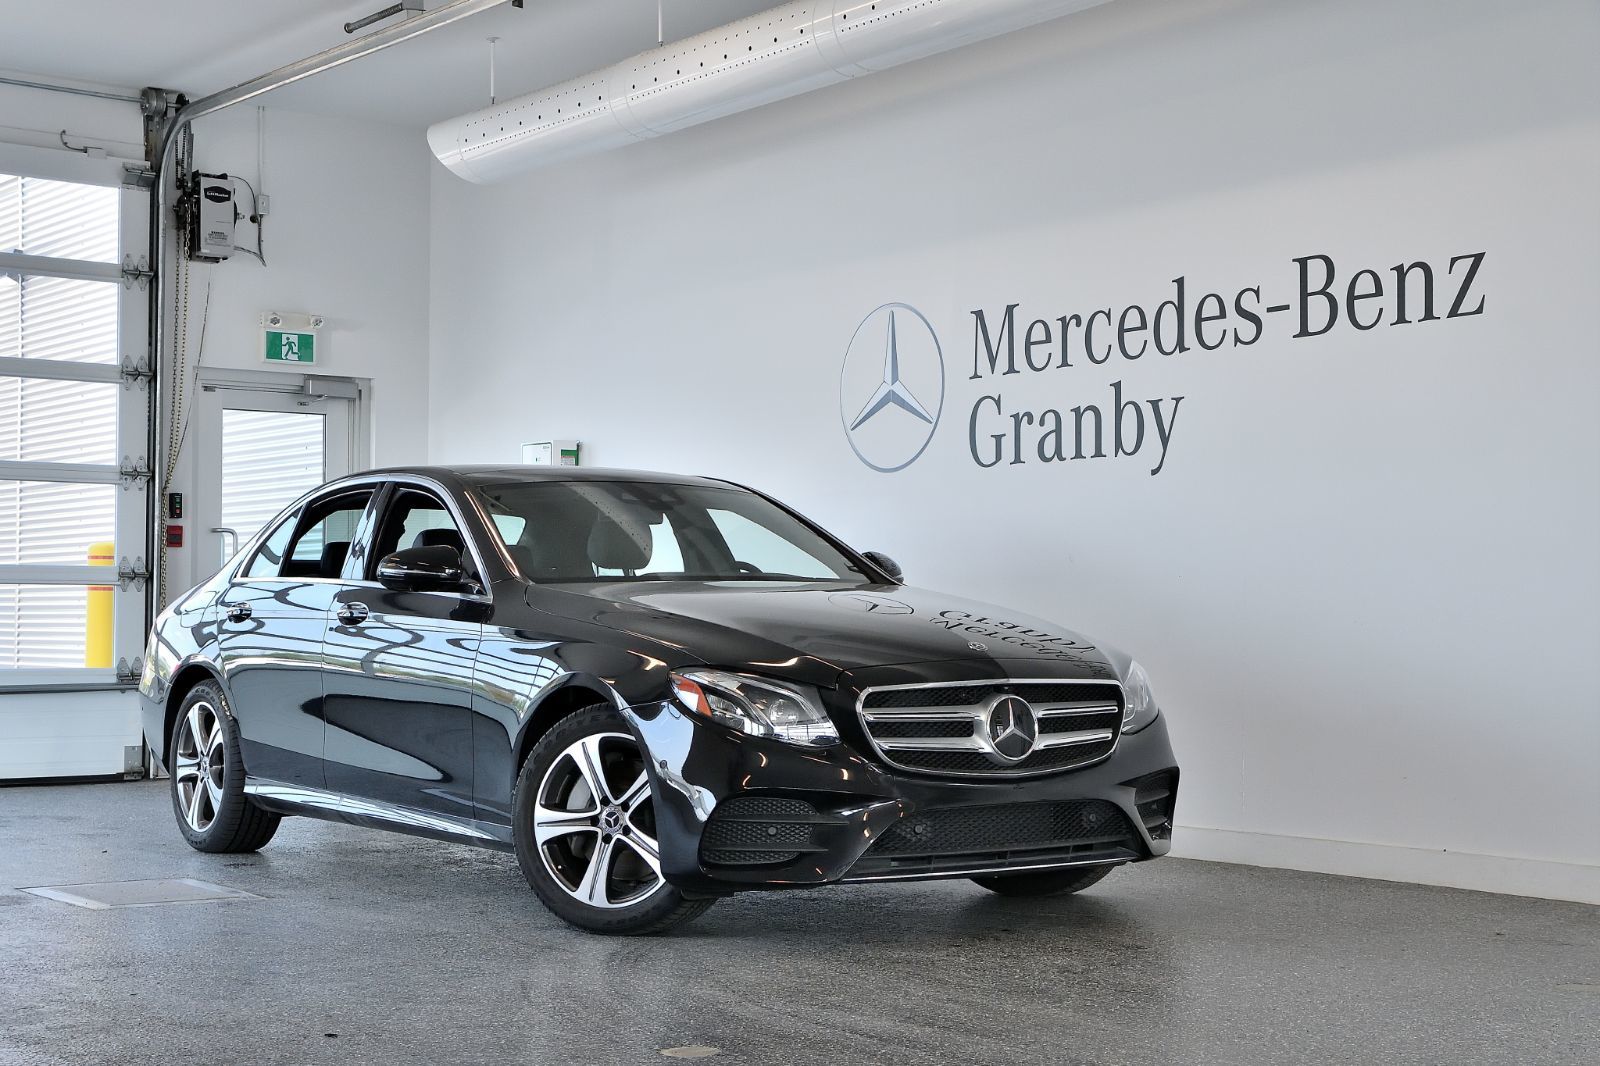 Mercedes-Benz Granby | 2019 Mercedes-Benz E-Class E 300 d'occasion à vendre - 57 995